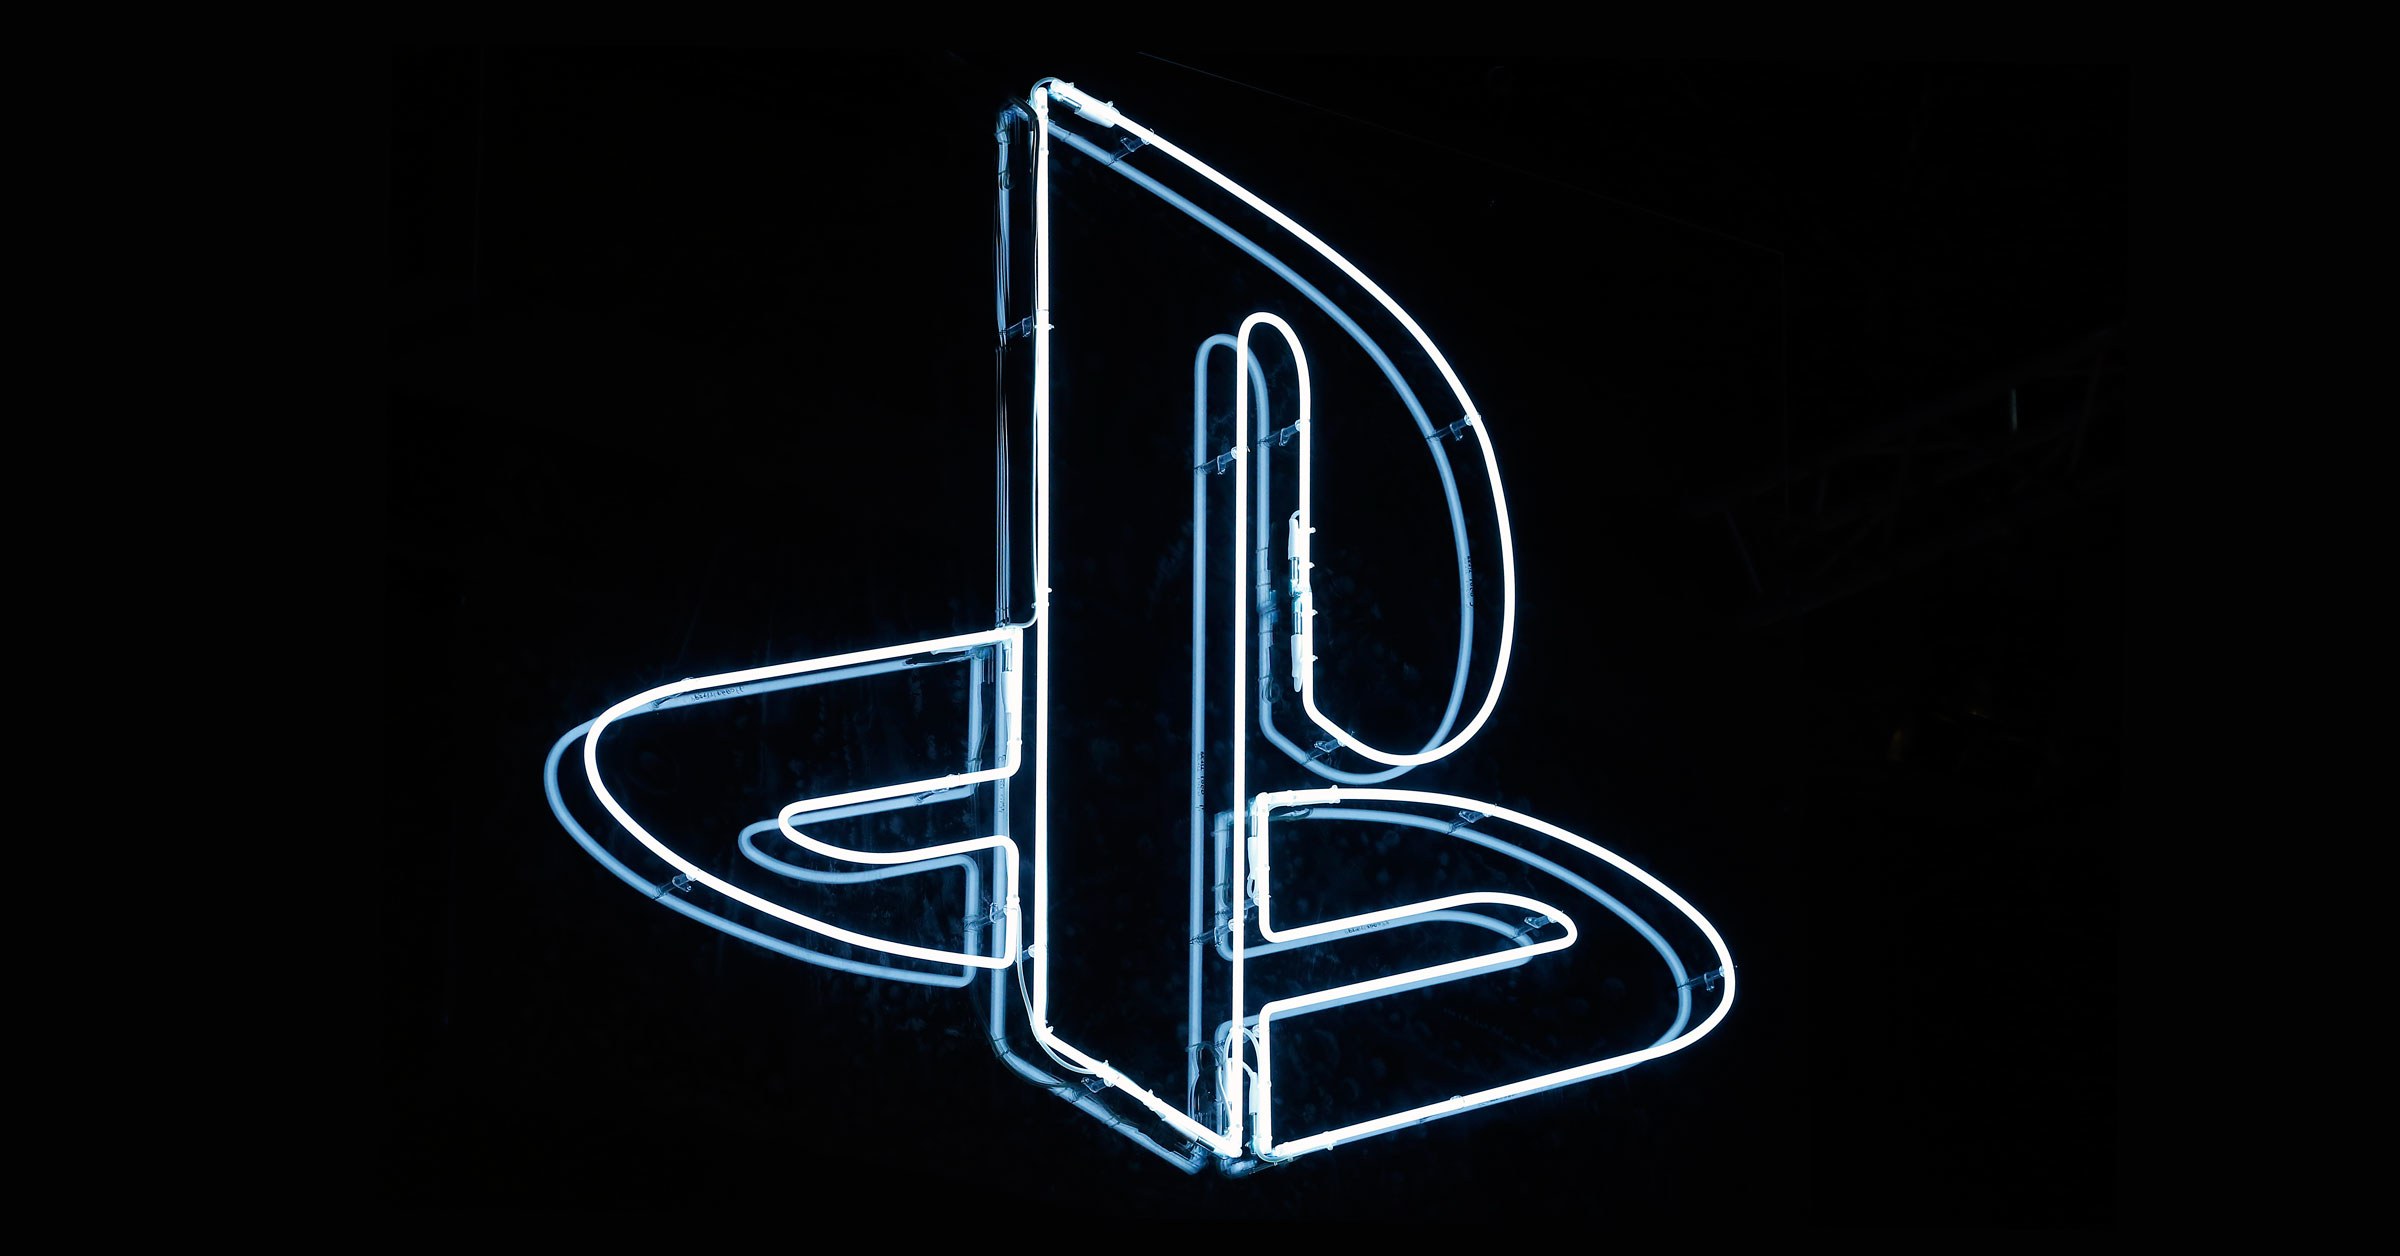 PlayStation 5 ön siparişe sunuldu!